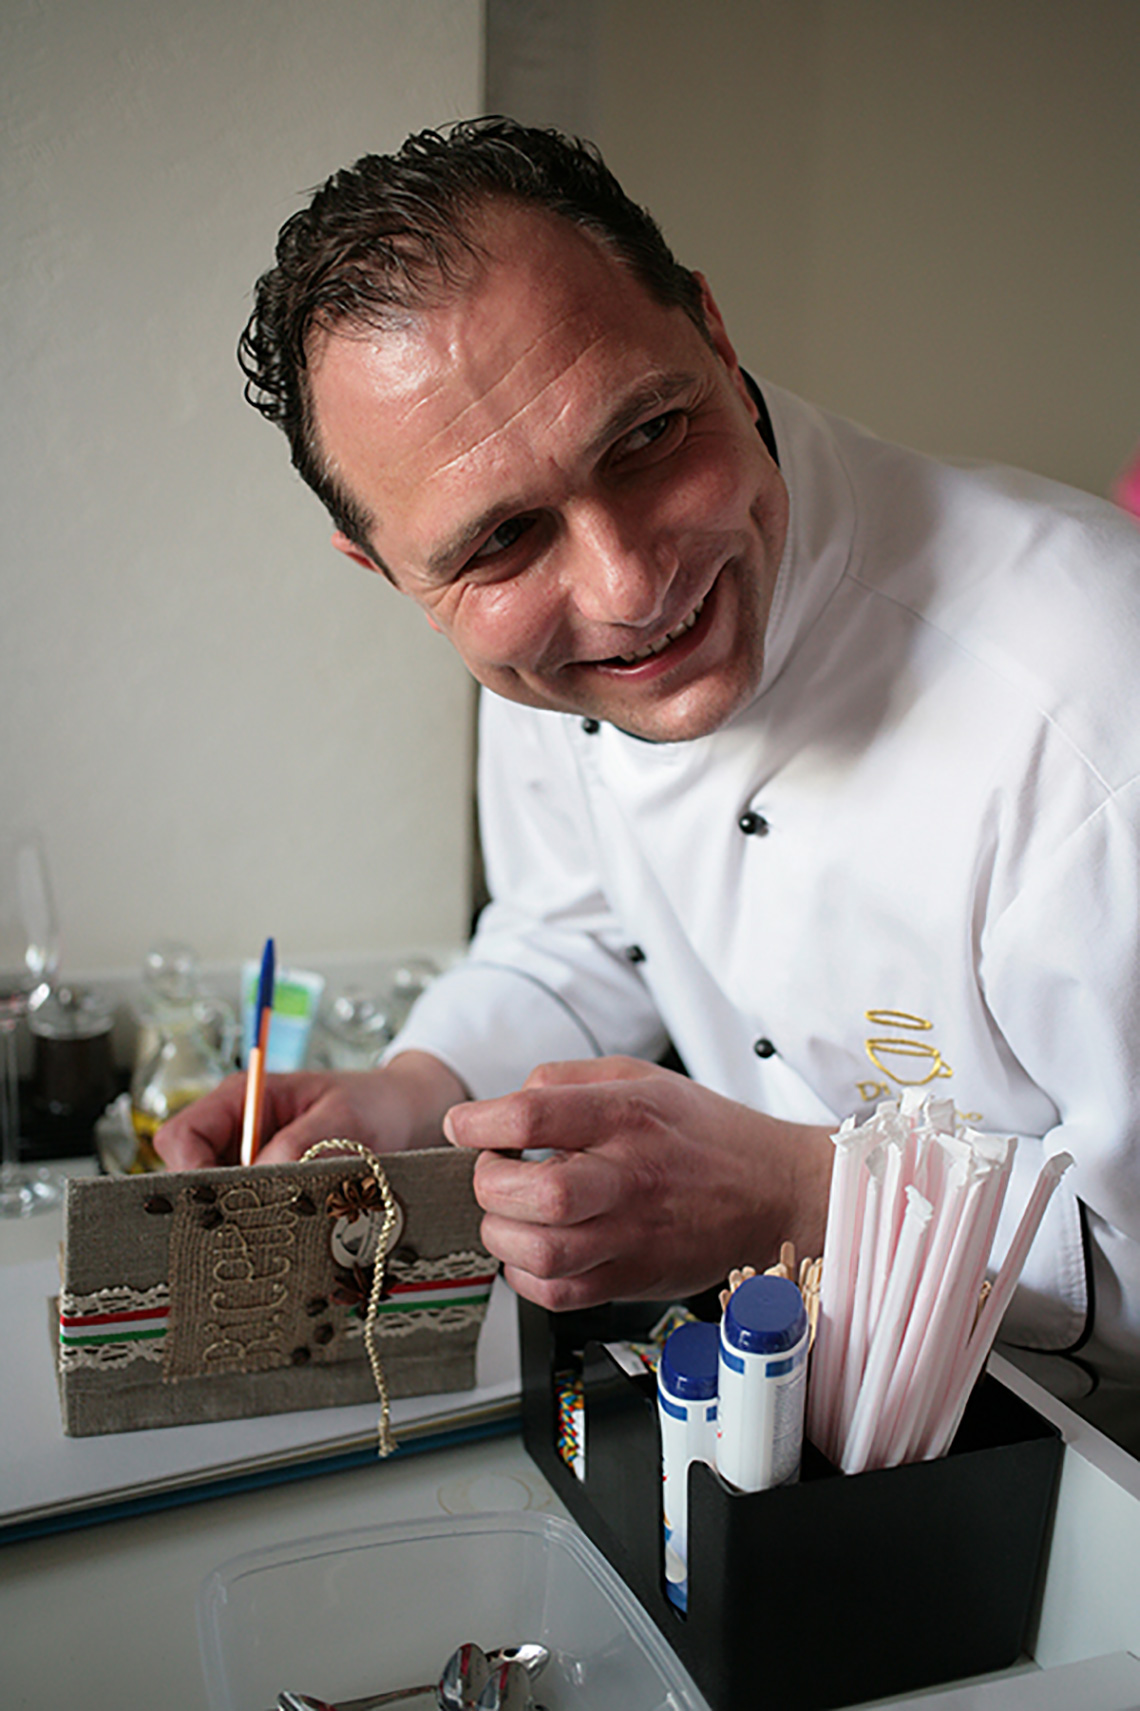 Шеф-повар подписывает подарки участникам. Кулинарные традиции Северной Италии